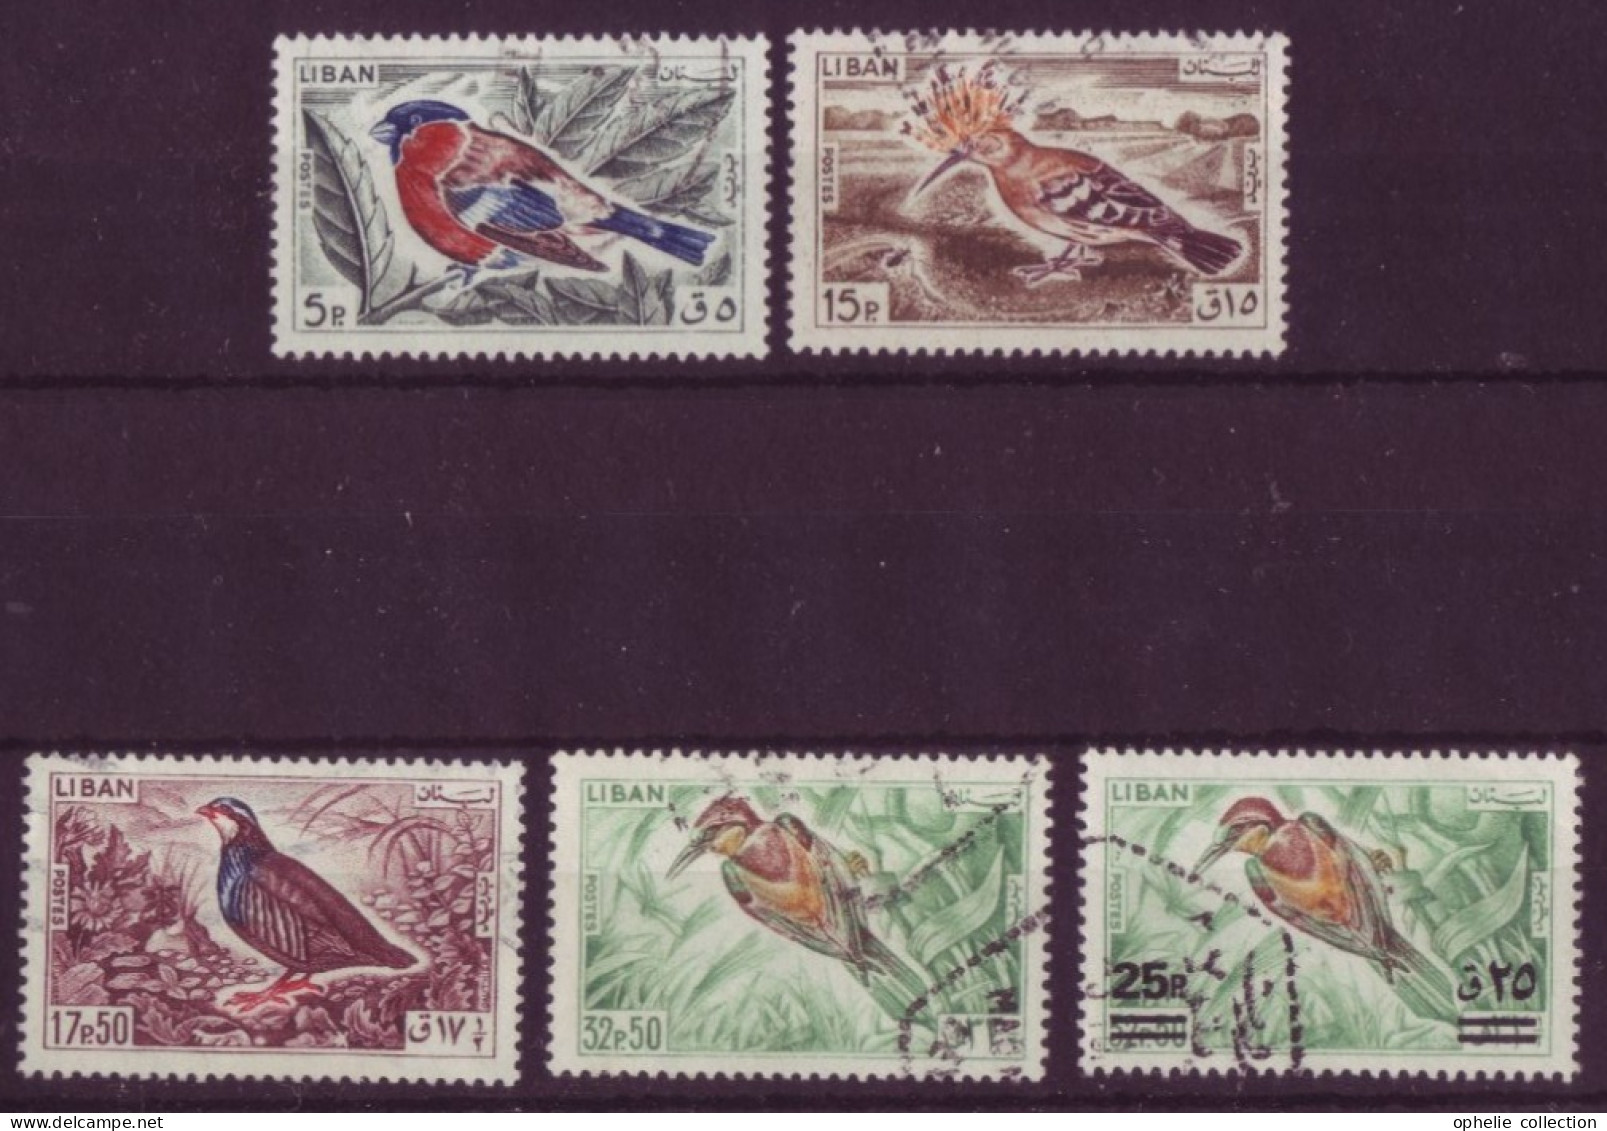 Asie - Liban - Oiseaux - 5 Timbres Différents - 7217 - Lebanon